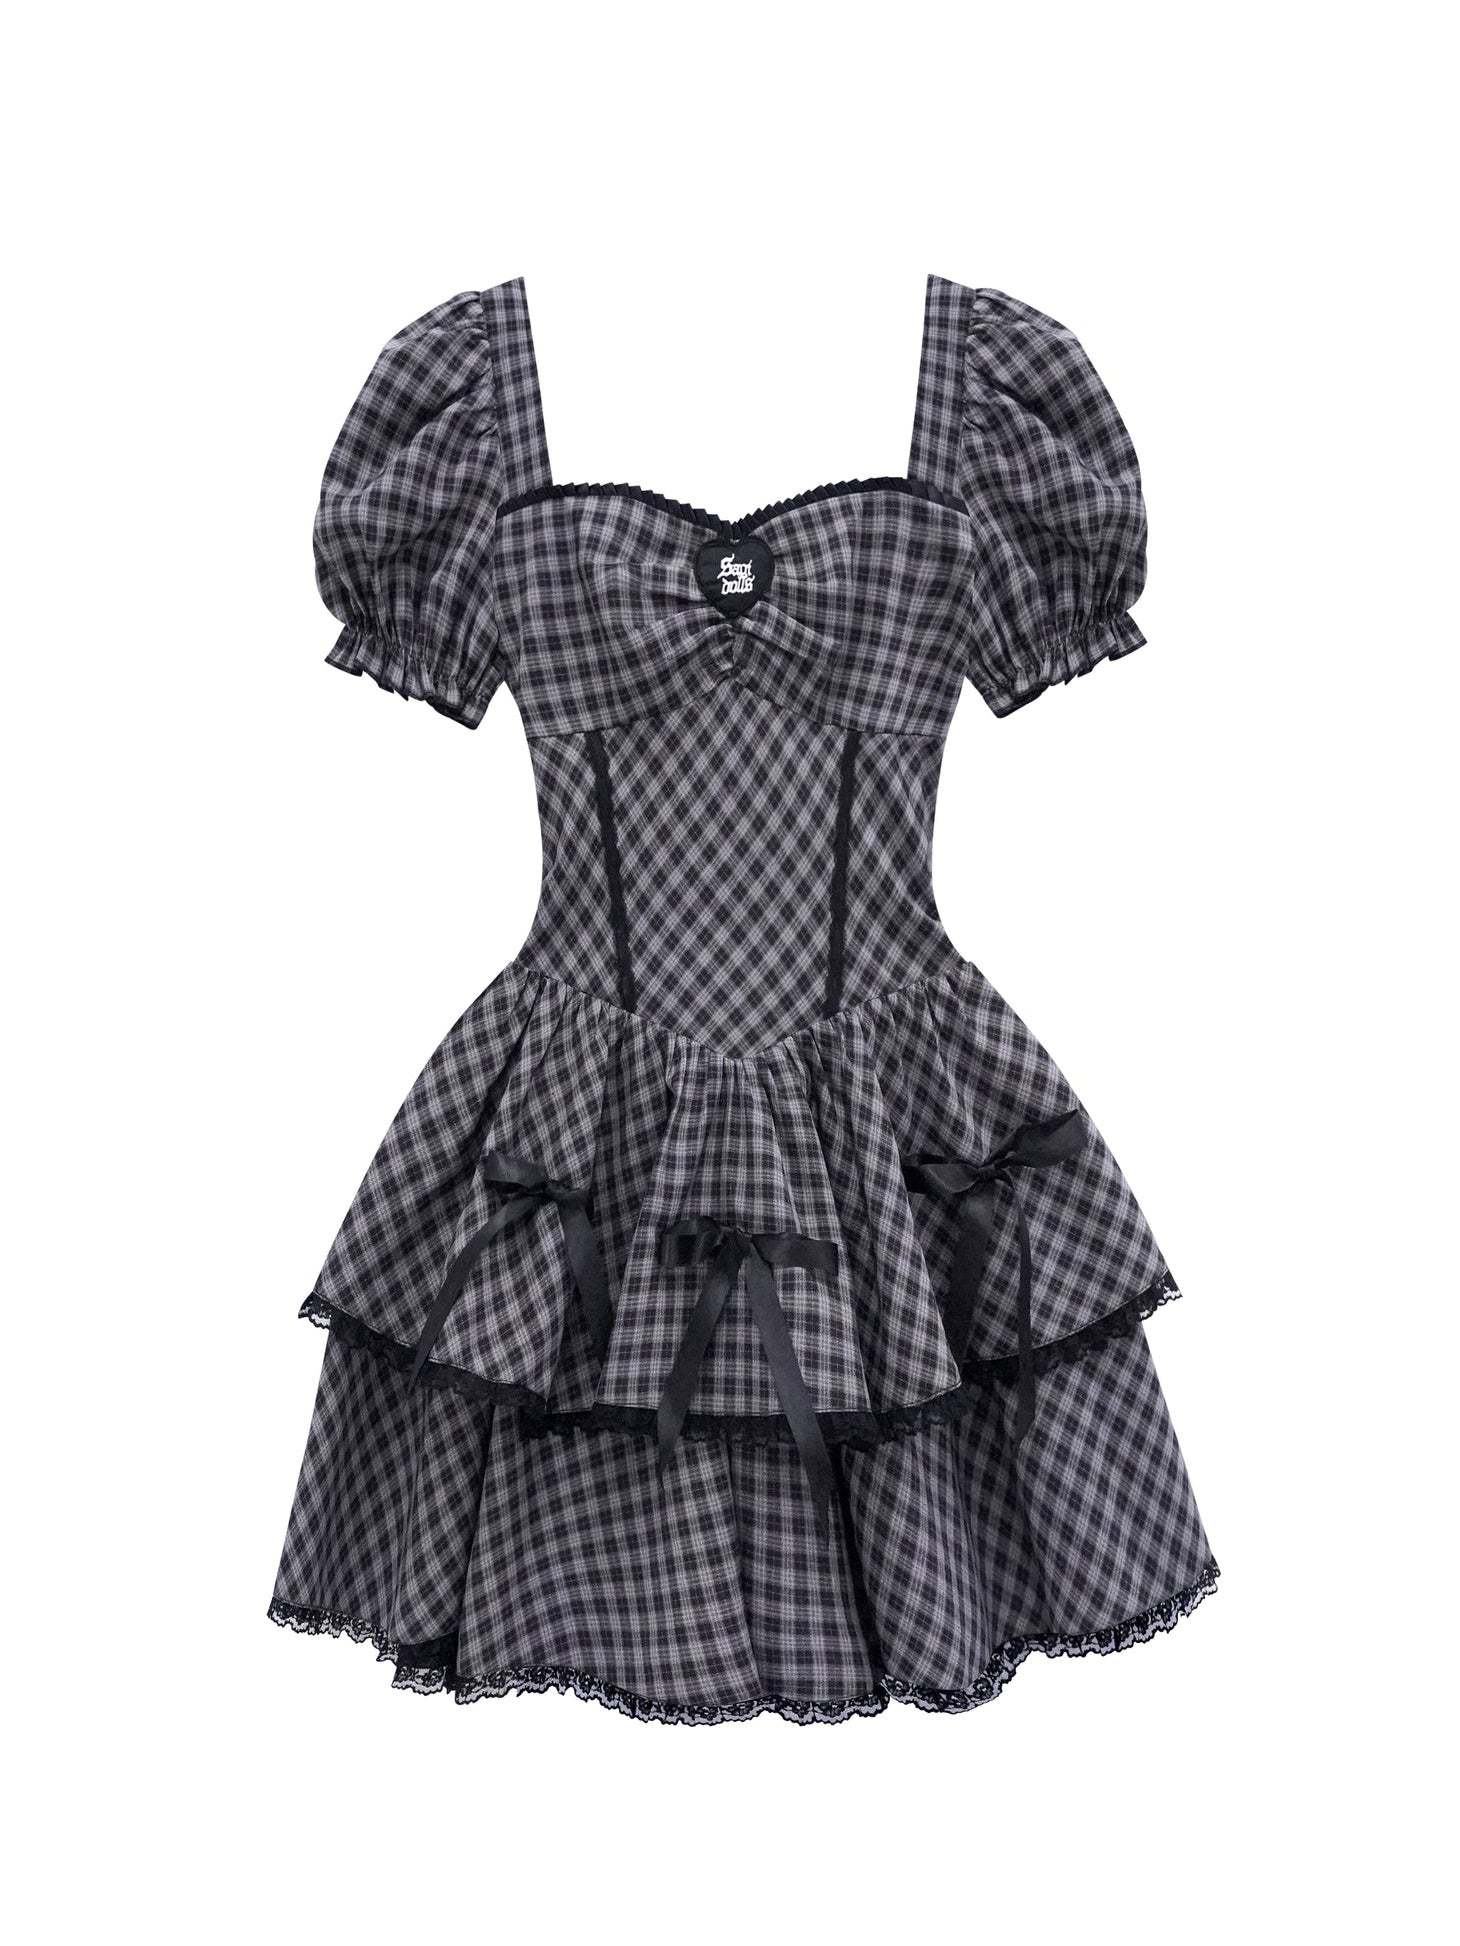 Arvbitana Girls' Suit Check Mesh Dress Long Sleeve One Piece Fluffy Skirt -  Walmart.com